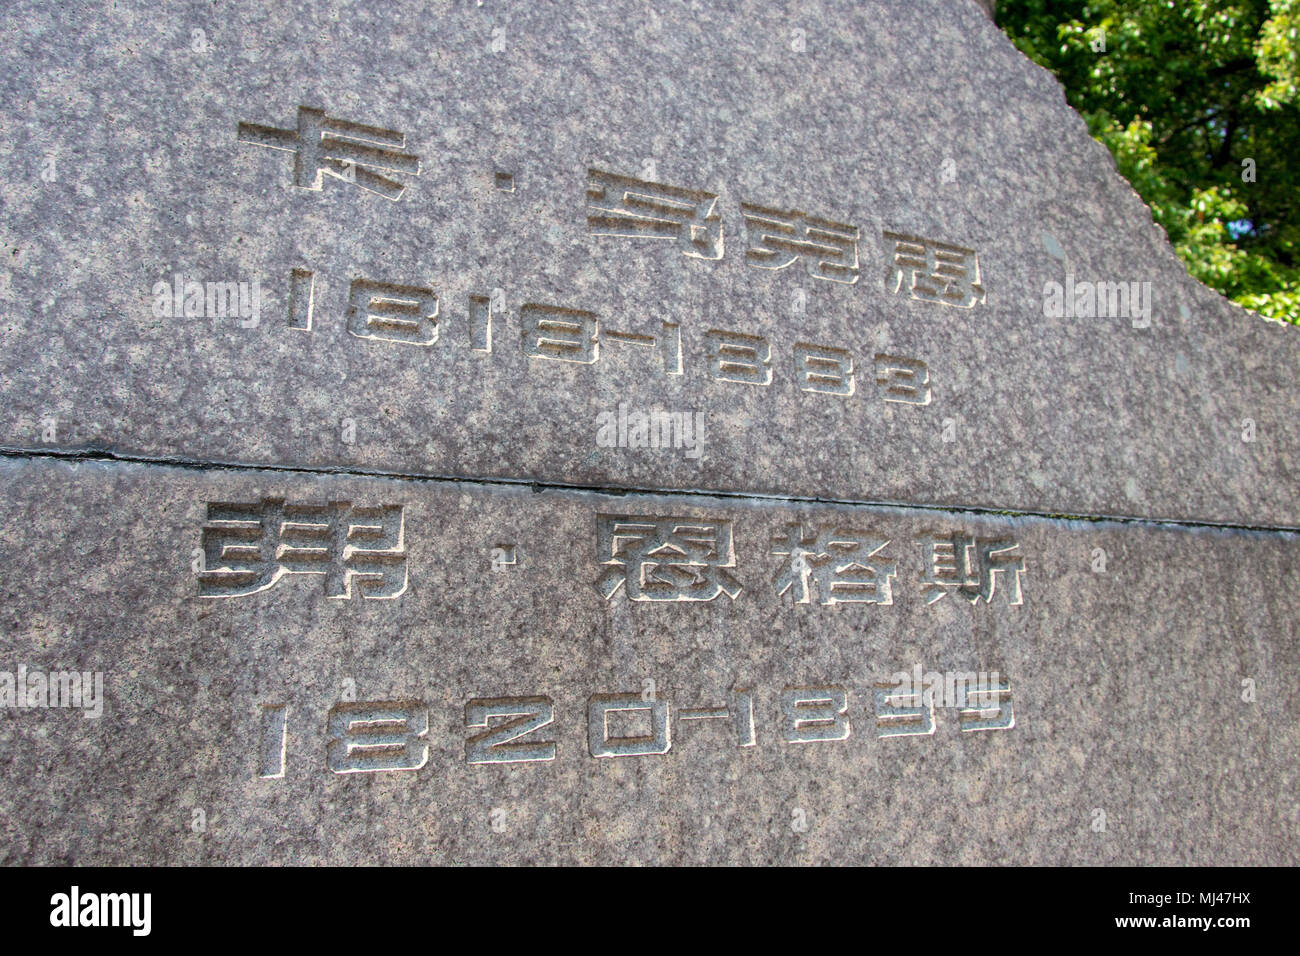 4 mai 2018 - ¤¦Ã Â Â'ÂµÂ¥Ã·Â¤severnãƒ»¦ÂÃ Â'Ã¥''…", ¤¦Ã Â Â'ÂµÂ¥Ã·Â¤severnãƒ»¦ÂÃ Â'Ã¥''…", la Chine - SHANGHAI, CHINE-4e : Les gens peuvent visiter les sculptures de l'Allemagne les philosophes Karl Marx et Friedrich Engels à Fuxing Park à Shanghai, marquant le 200e anniversaire à venir de Karl Marx. Crédit : SIPA Asie/ZUMA/Alamy Fil Live News Banque D'Images